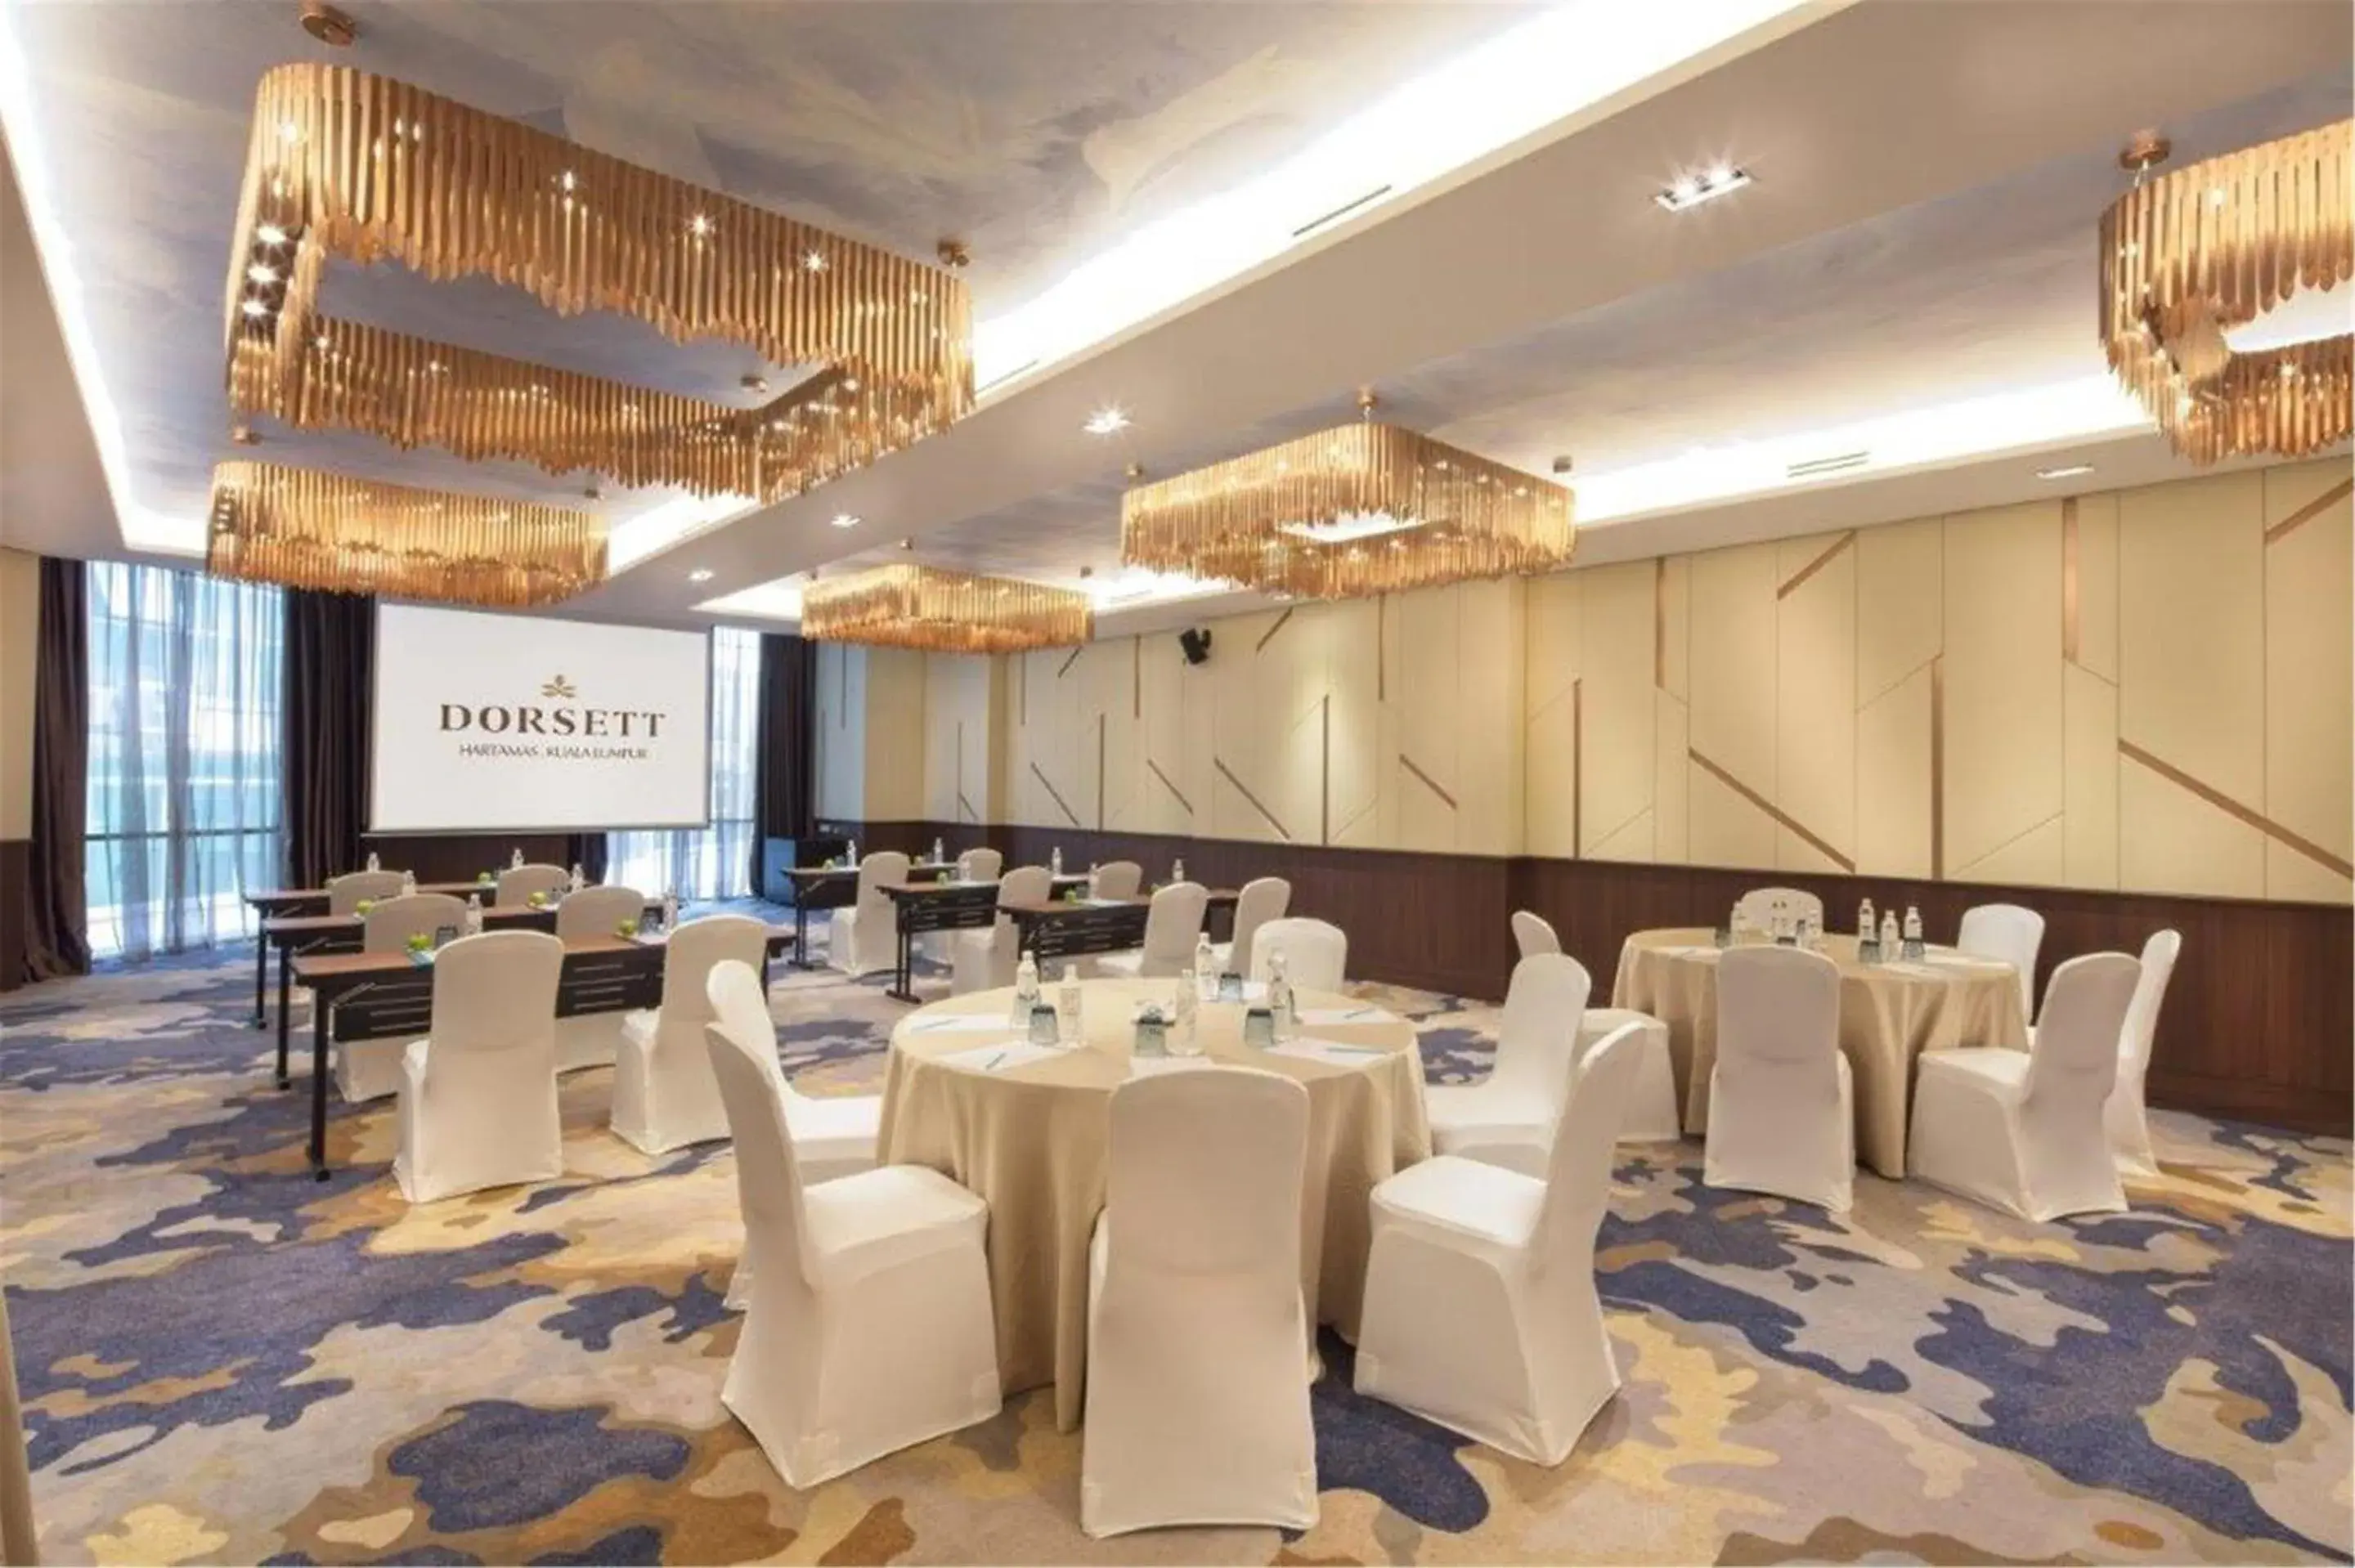 Business facilities, Banquet Facilities in Dorsett Hartamas Kuala Lumpur